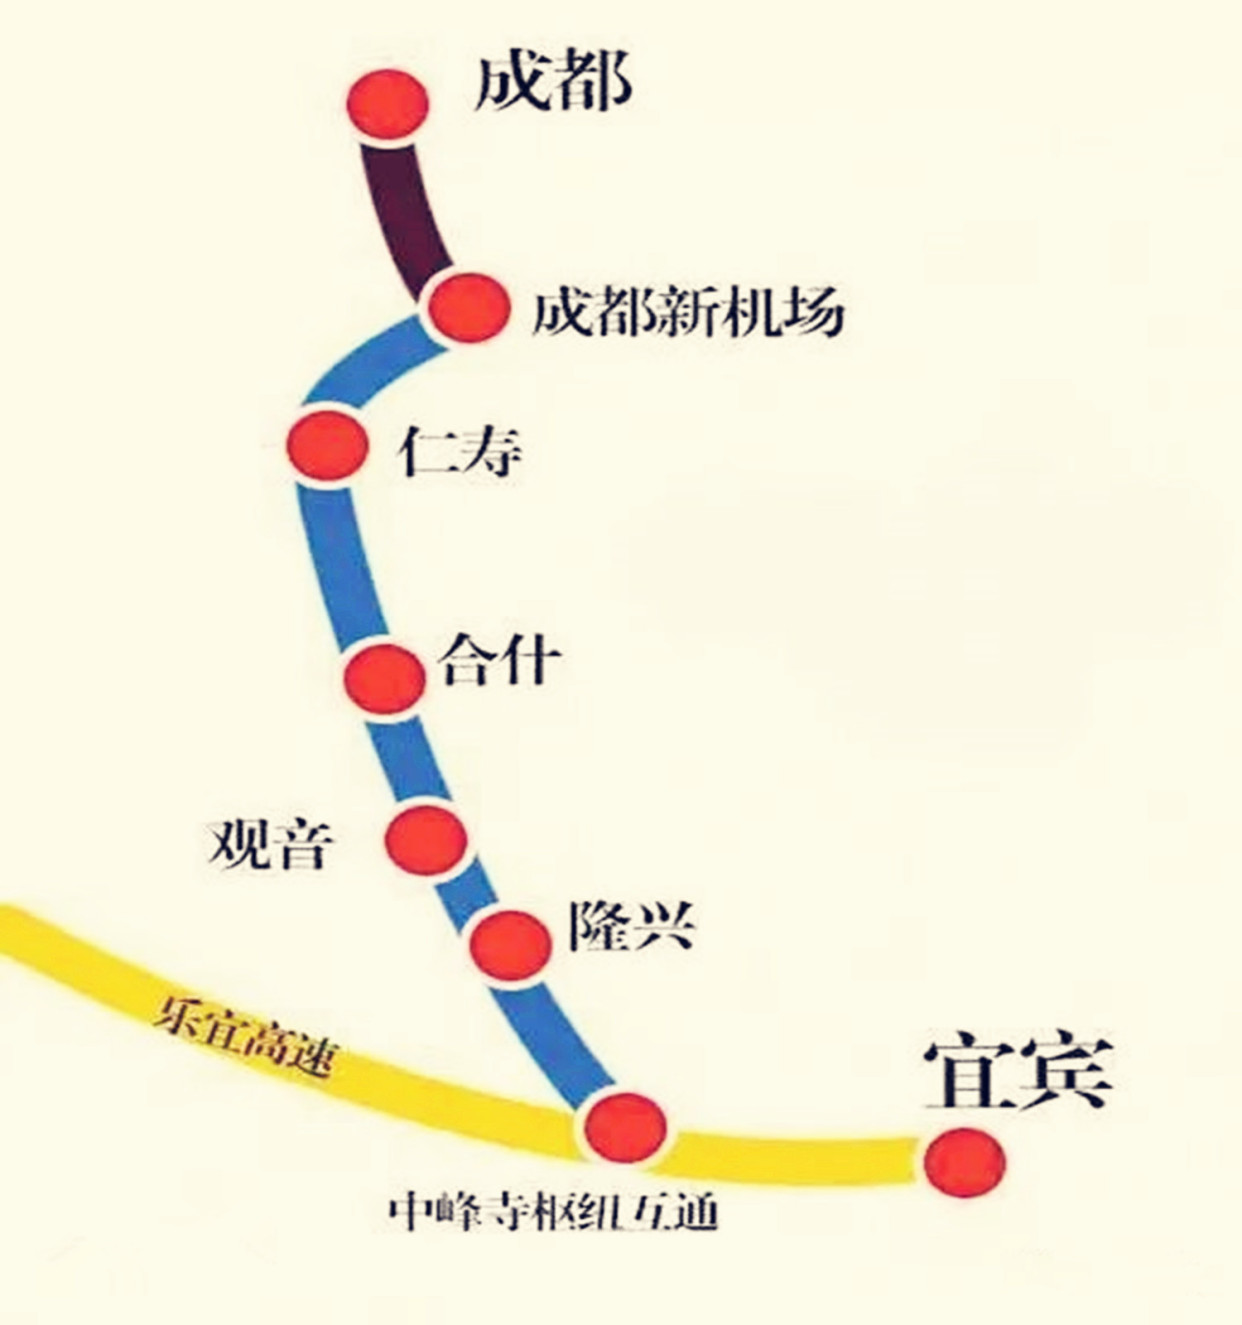 四川这条高速通车倒计时,全长约157公里,双向六车道规模